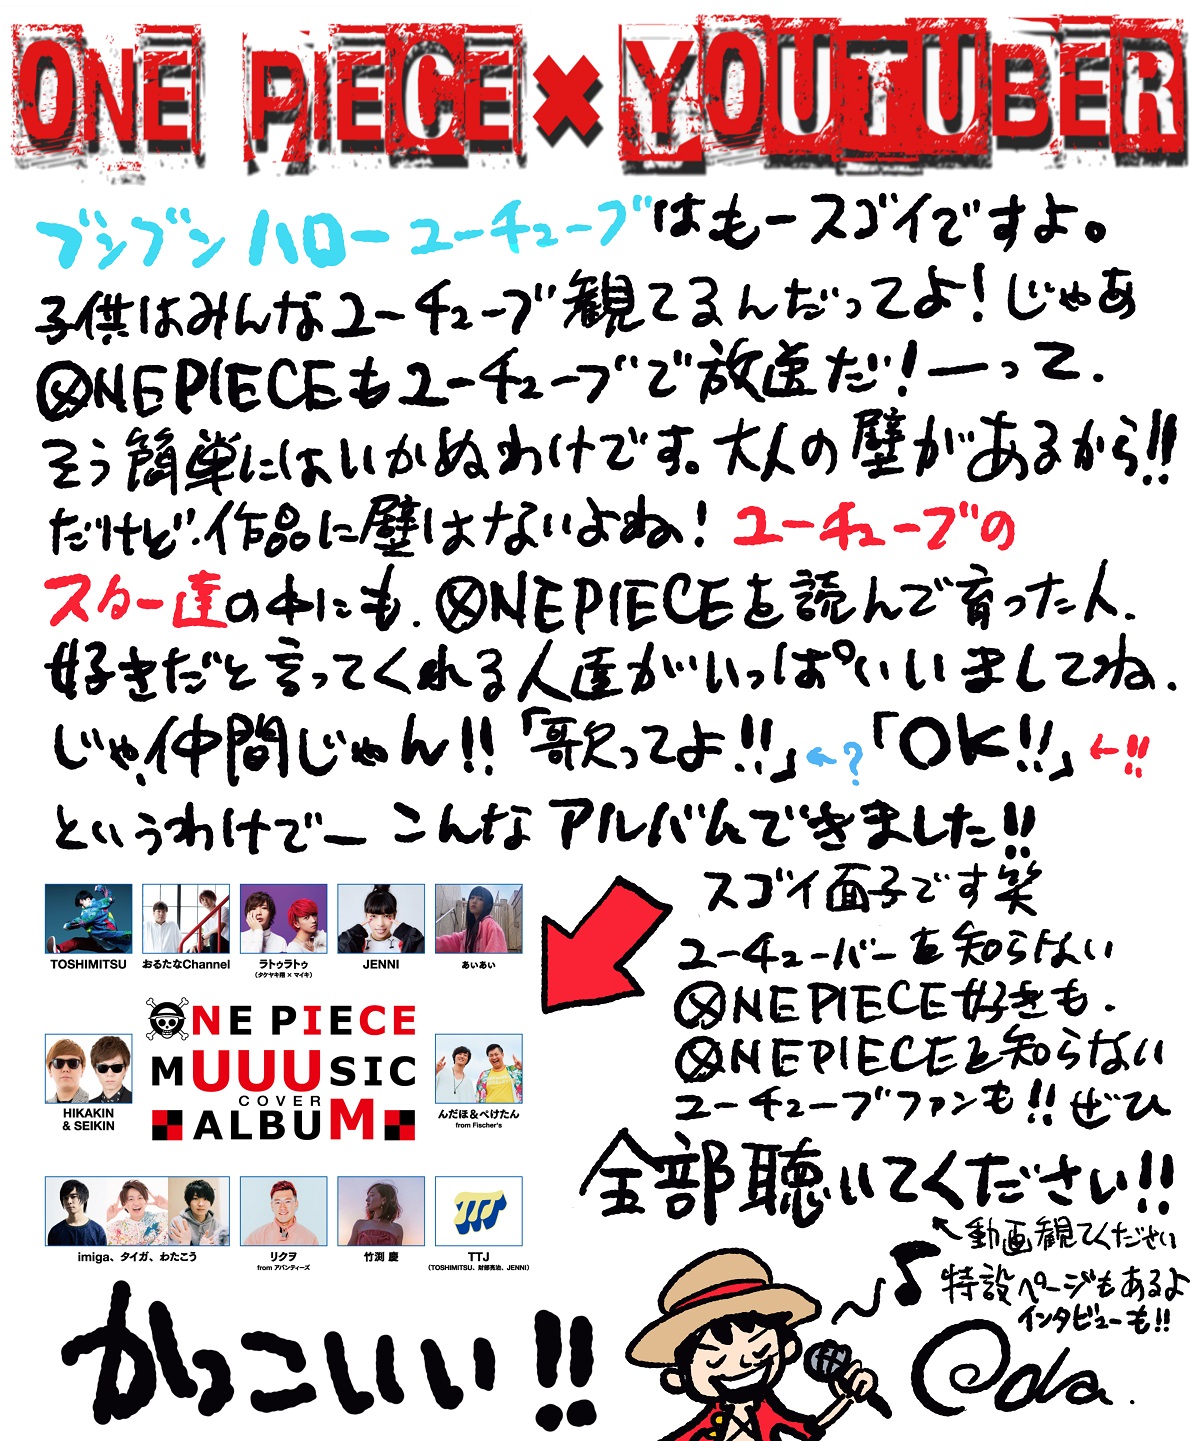 Hikakin Seikin フィッシャーズらがアニメ One Piece 歴代主題歌をカバーした One Piece Muuusic Cover Album 発売 尾田栄一郎からのコメントも Musicman